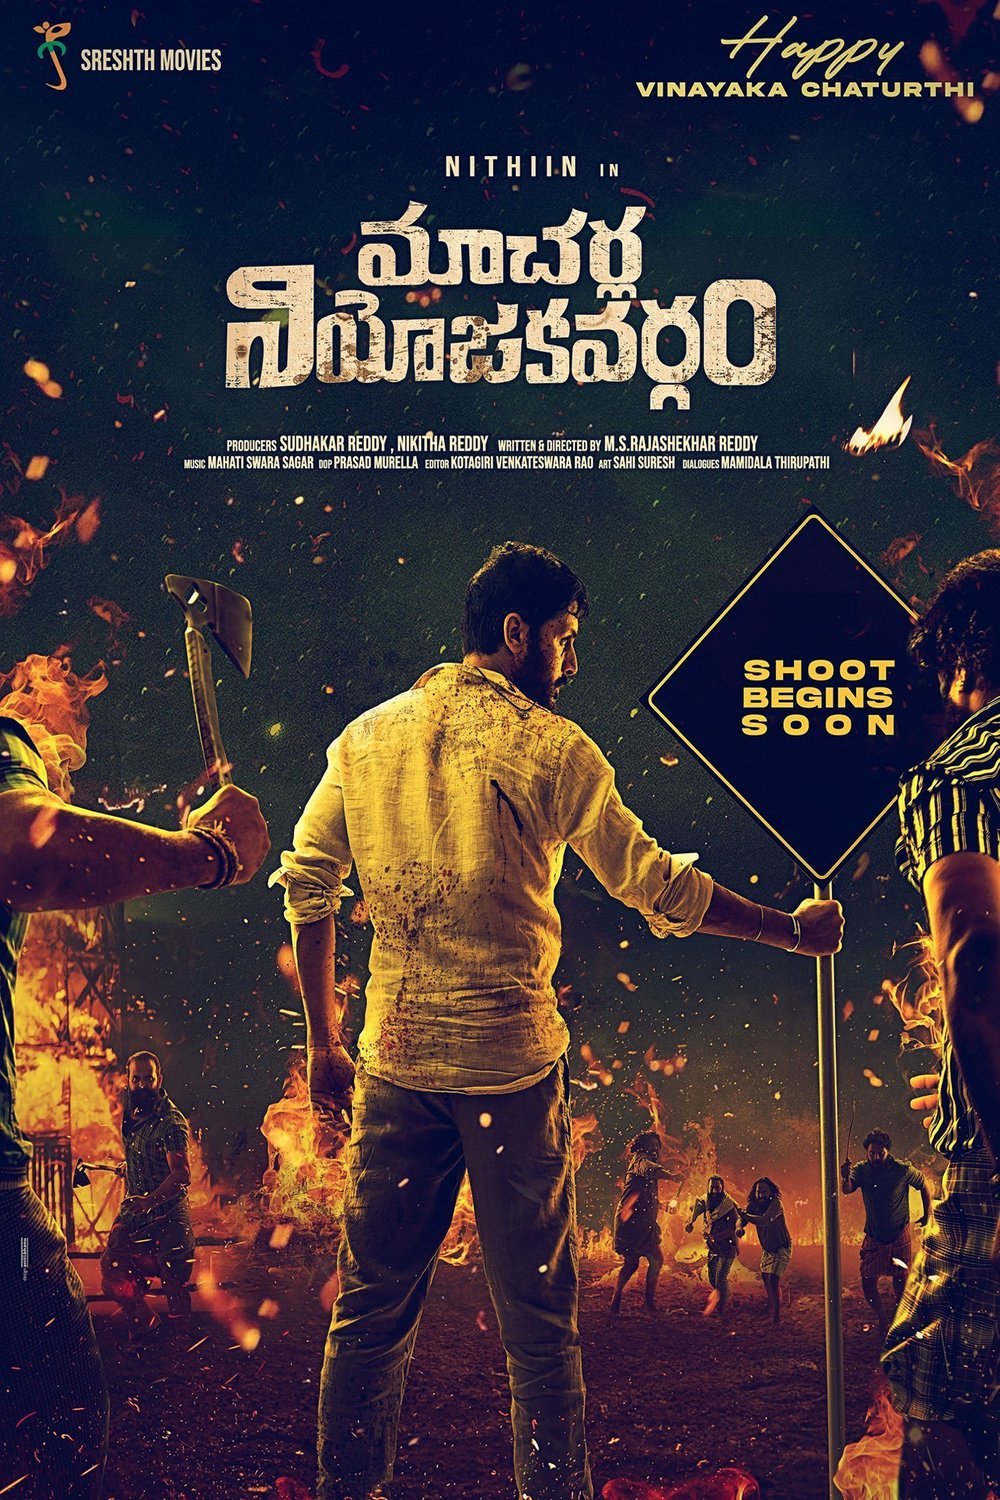 Telugu poster of the movie Macherla Niyojakavargam